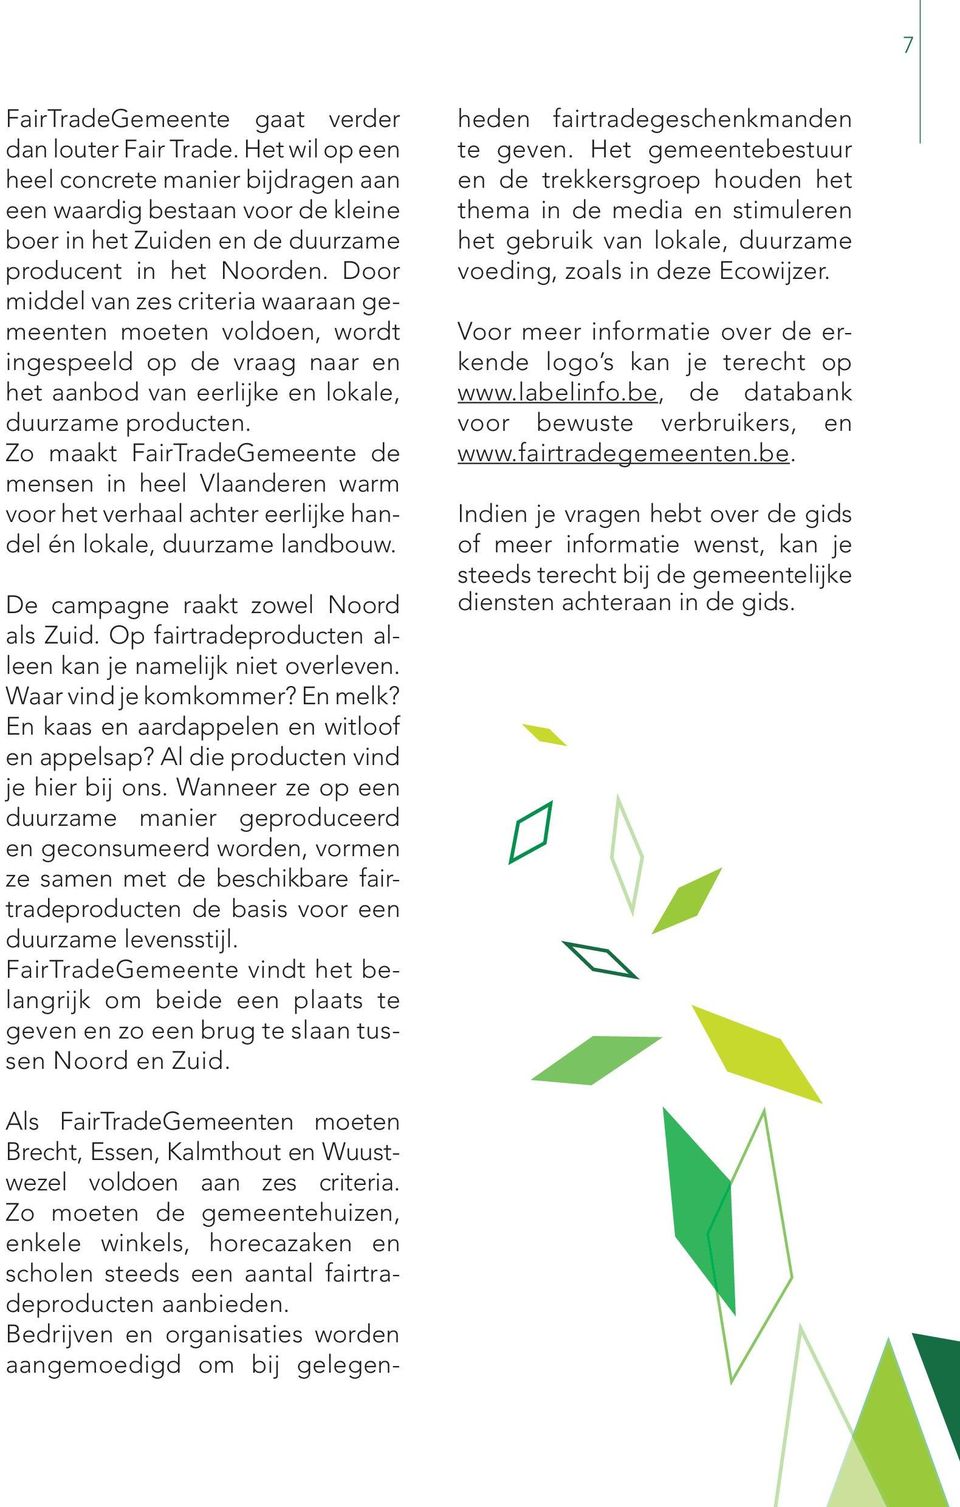 Zo maakt FairTradeGemeente de mensen in heel Vlaanderen warm voor het verhaal achter eerlijke handel én lokale, duurzame landbouw. De campagne raakt zowel Noord als Zuid.